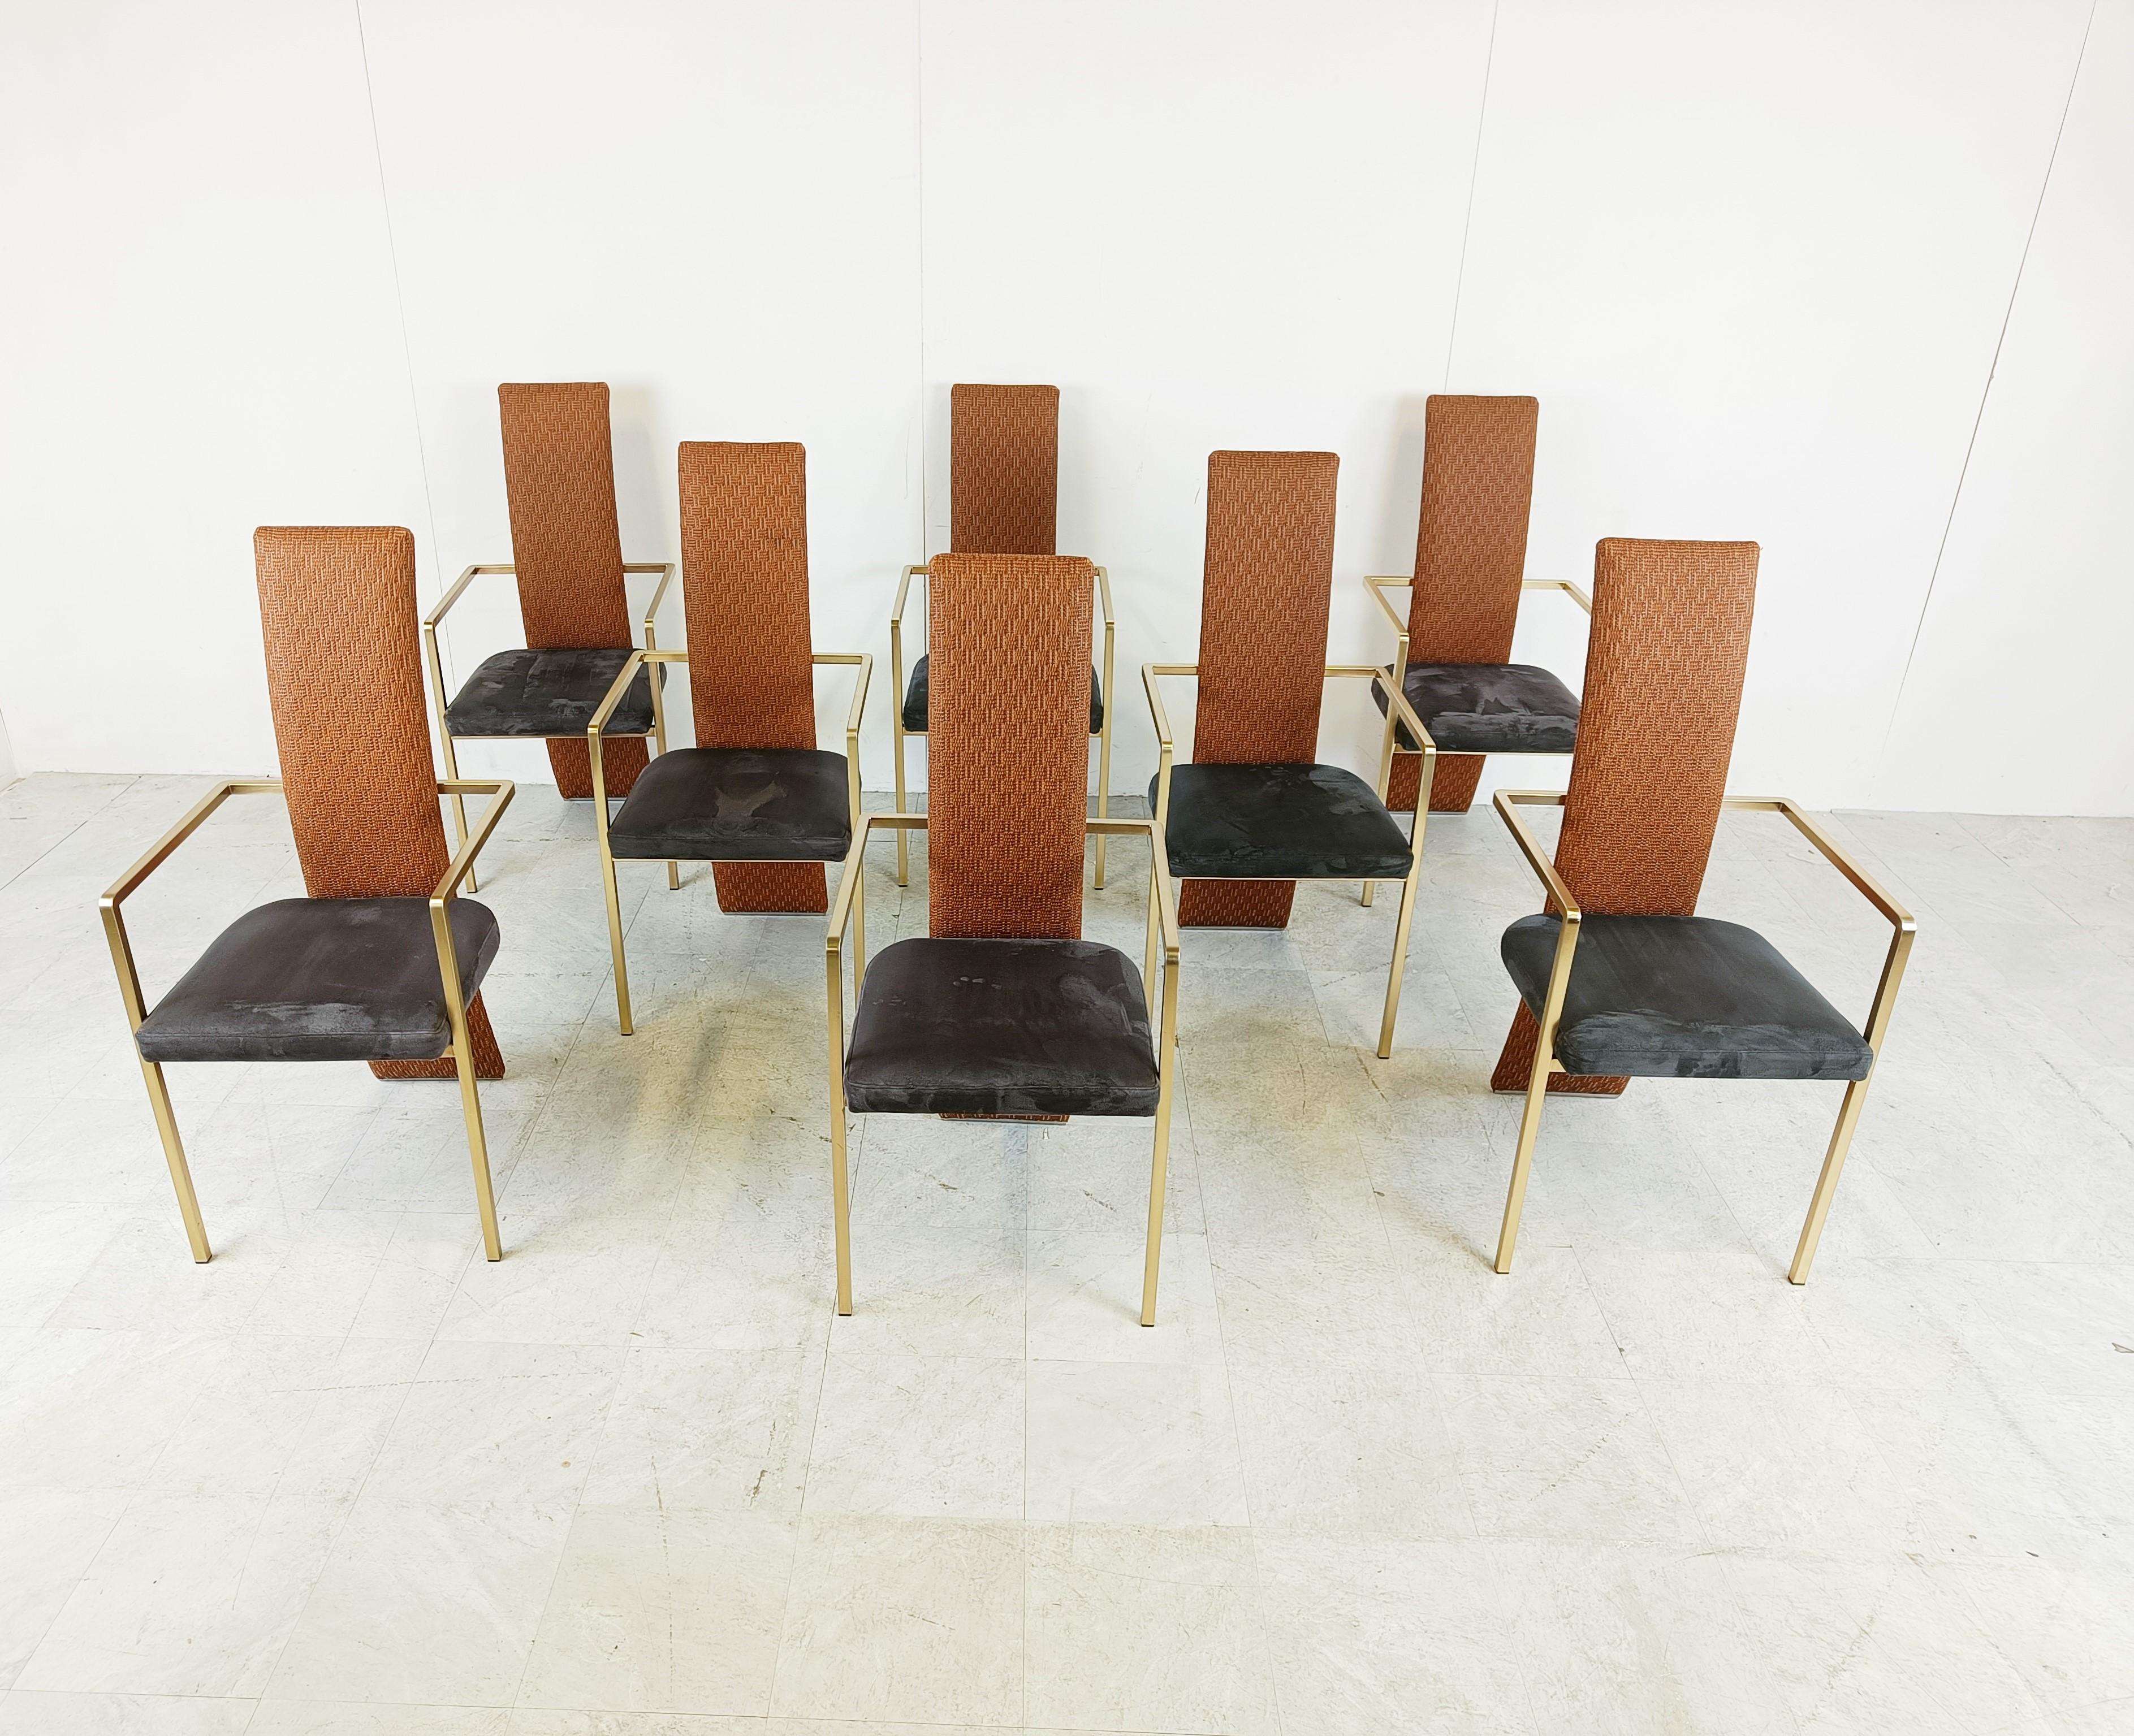 Ensemble de huit chaises de salle à manger élégantes fabriquées par Belgochrom.

Les chaises sont tout à fait uniques grâce aux dossiers en osier et aux sièges en alcantara bleu foncé.

Cadres en métal poli.

Belgochrom produisait des meubles haut